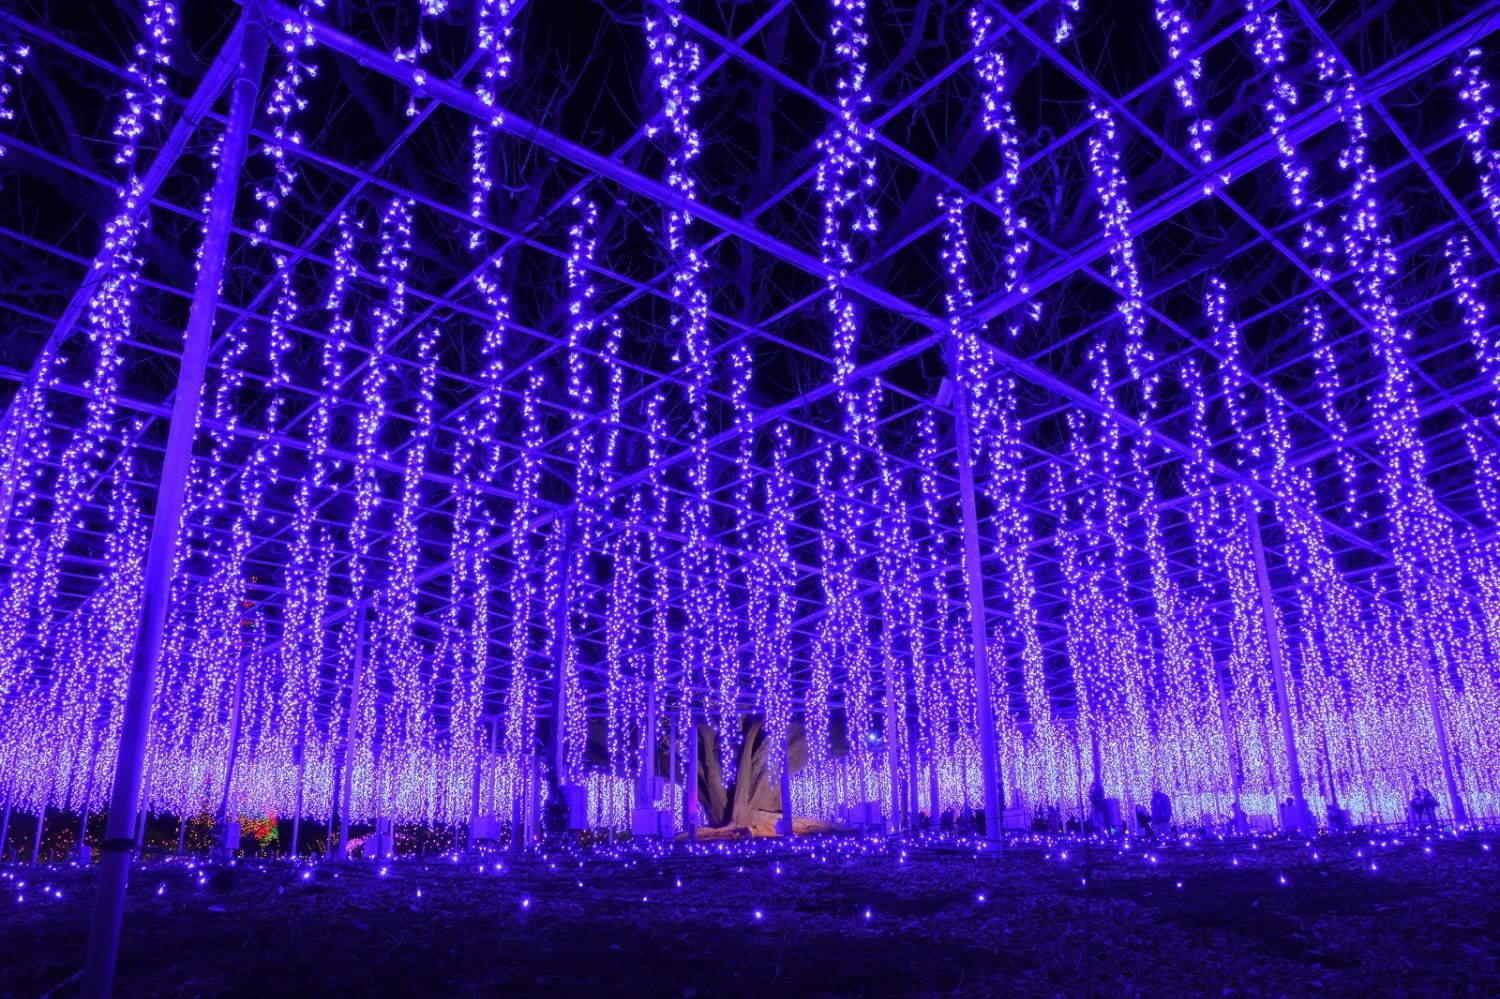 Ashikaga Flower Park Illumination 2020 1 - wisteria illumination